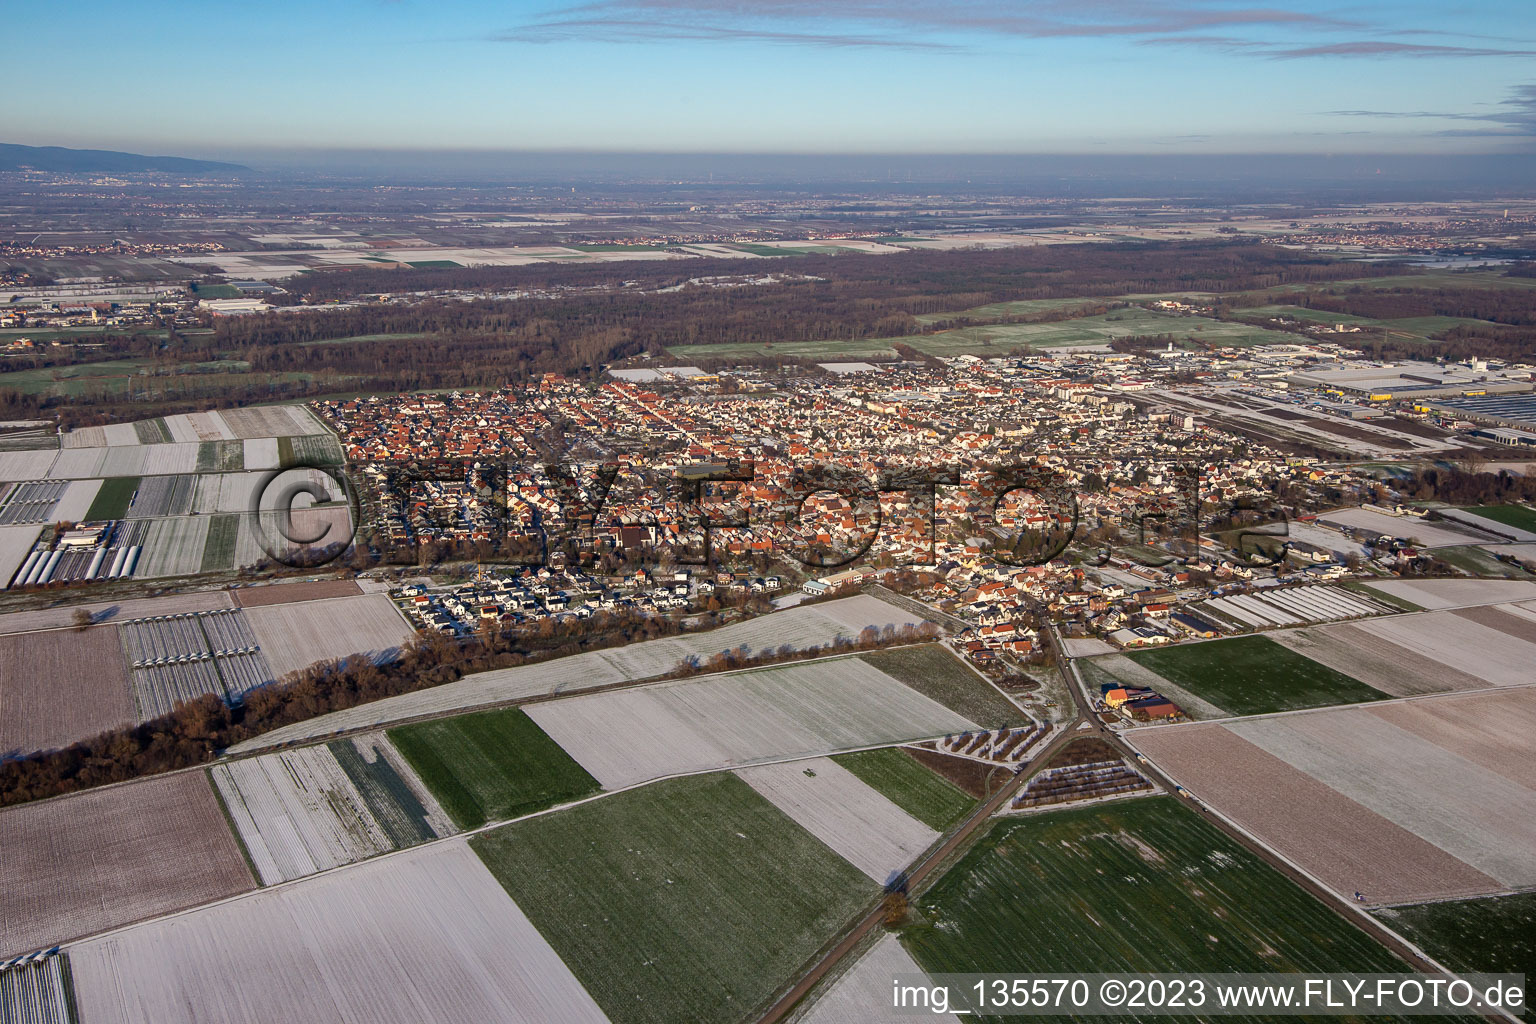 Vue aérienne de Du sud-ouest en hiver quand il y a de la neige à Offenbach an der Queich dans le département Rhénanie-Palatinat, Allemagne